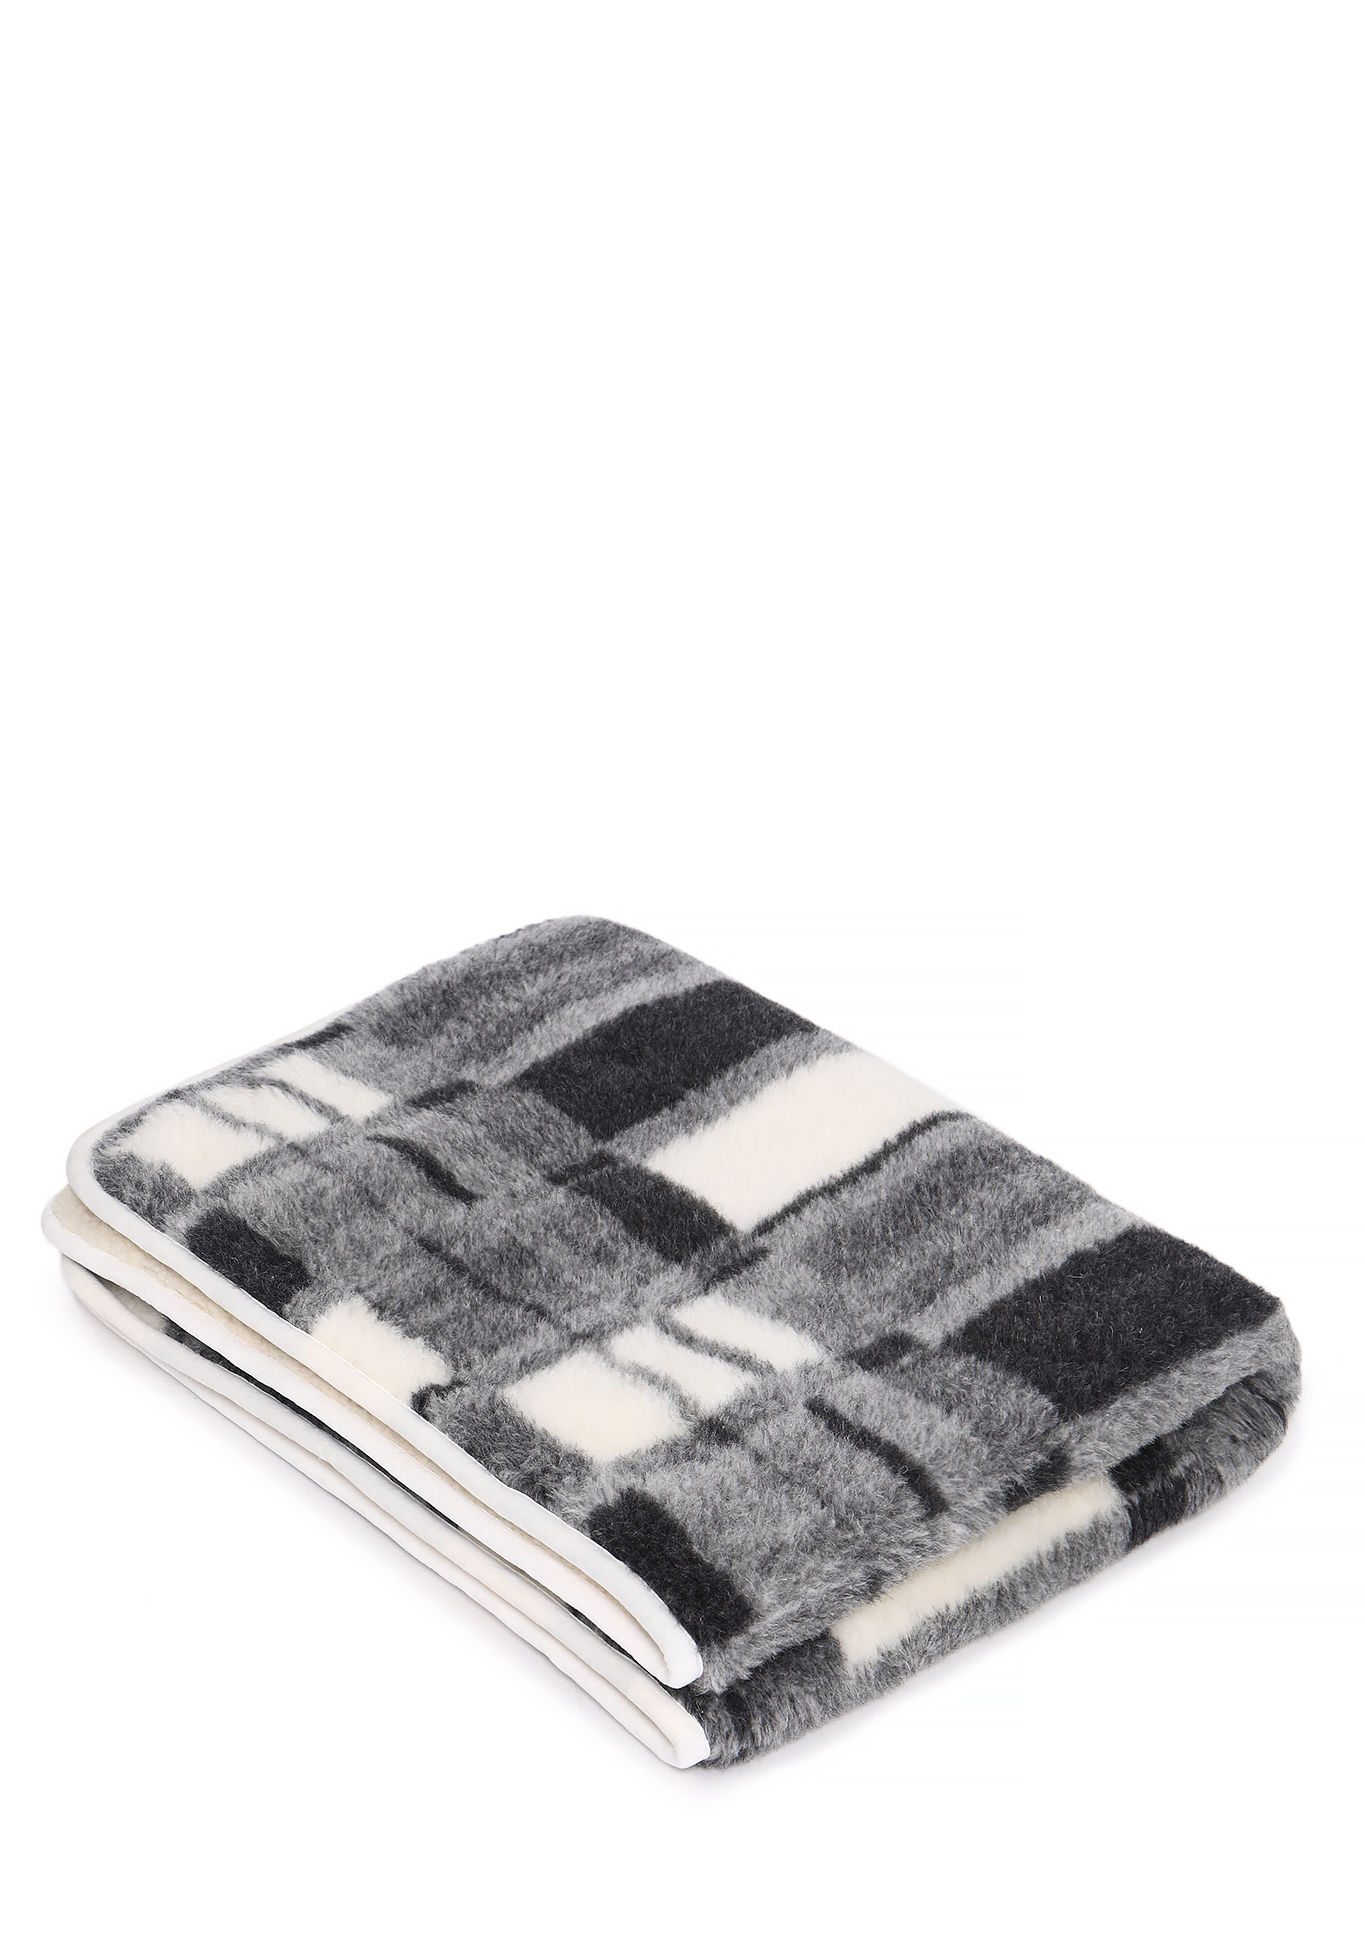 Одеяло из натуральной овечьей шерсти Alwero, цвет бело-серый, размер 100х140 - фото 1